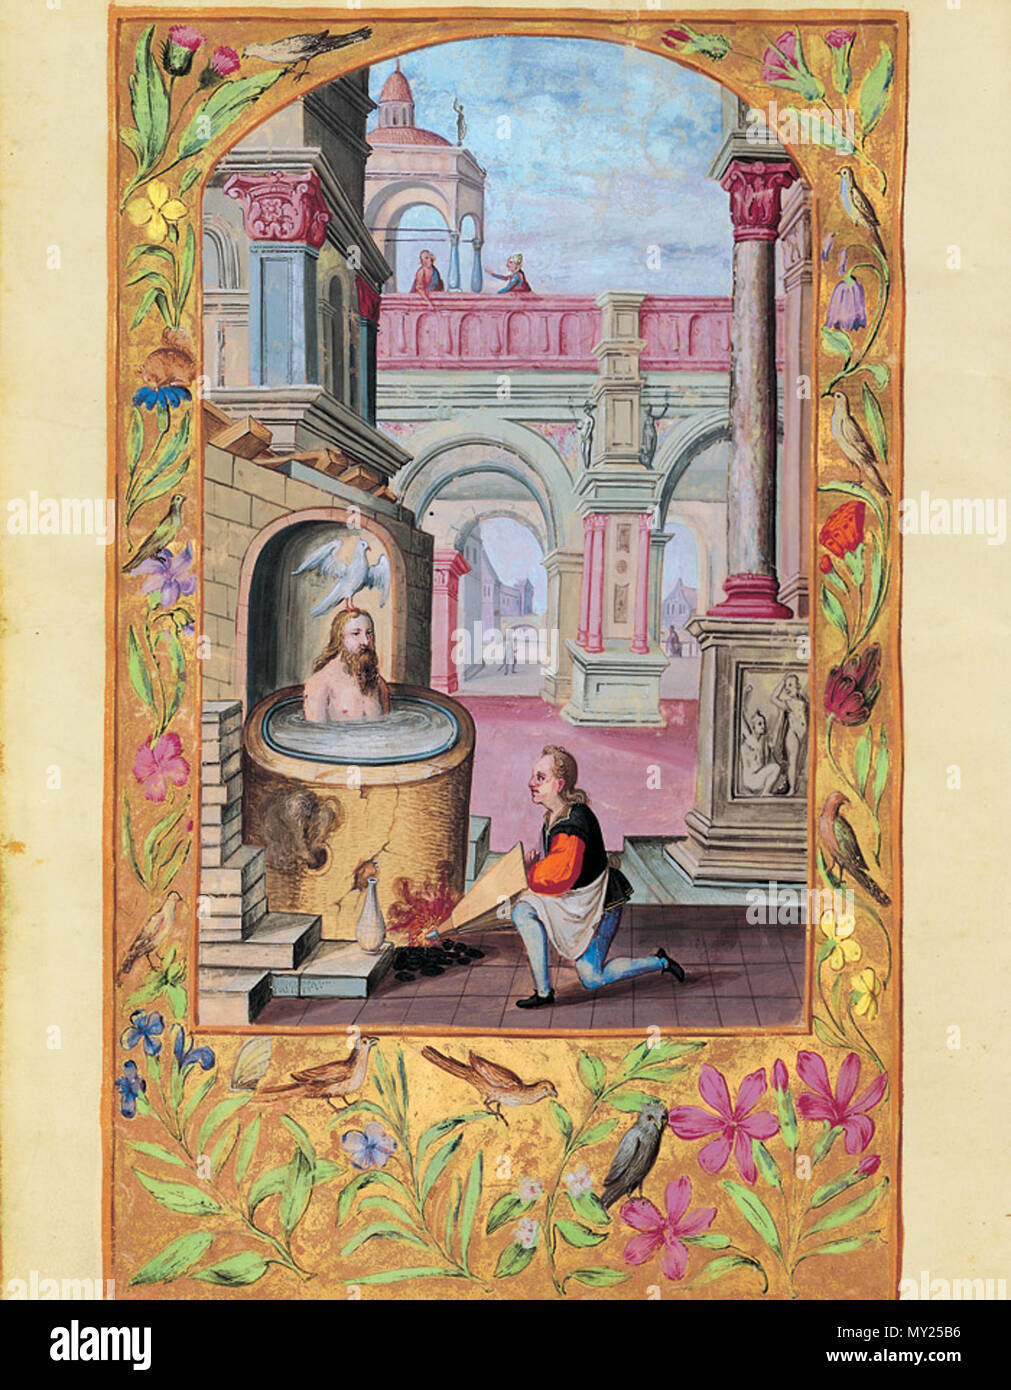 498 Splendor Solis - Traité d'Alchimie - Bouillir le corps dans le vase (Les Sept Paraboles) Stock Photo